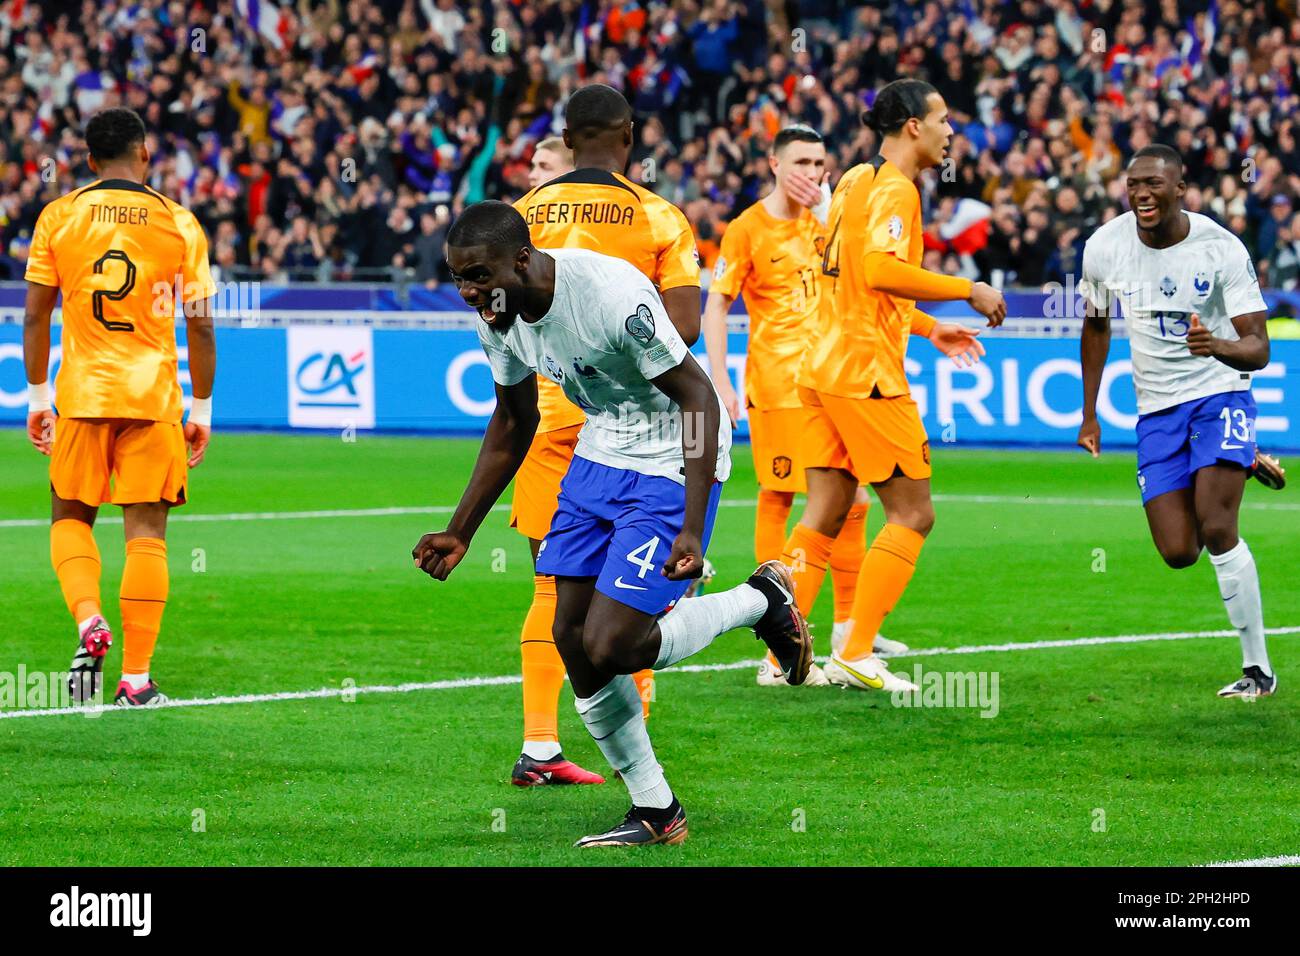 24-03-2023: Sport: Frankrijk vs Nederland PARIS, PAYS-BAS - MARS 24: Dayot Upavecano (France) marque le 2-0, célébrant pendant le match Europe Banque D'Images